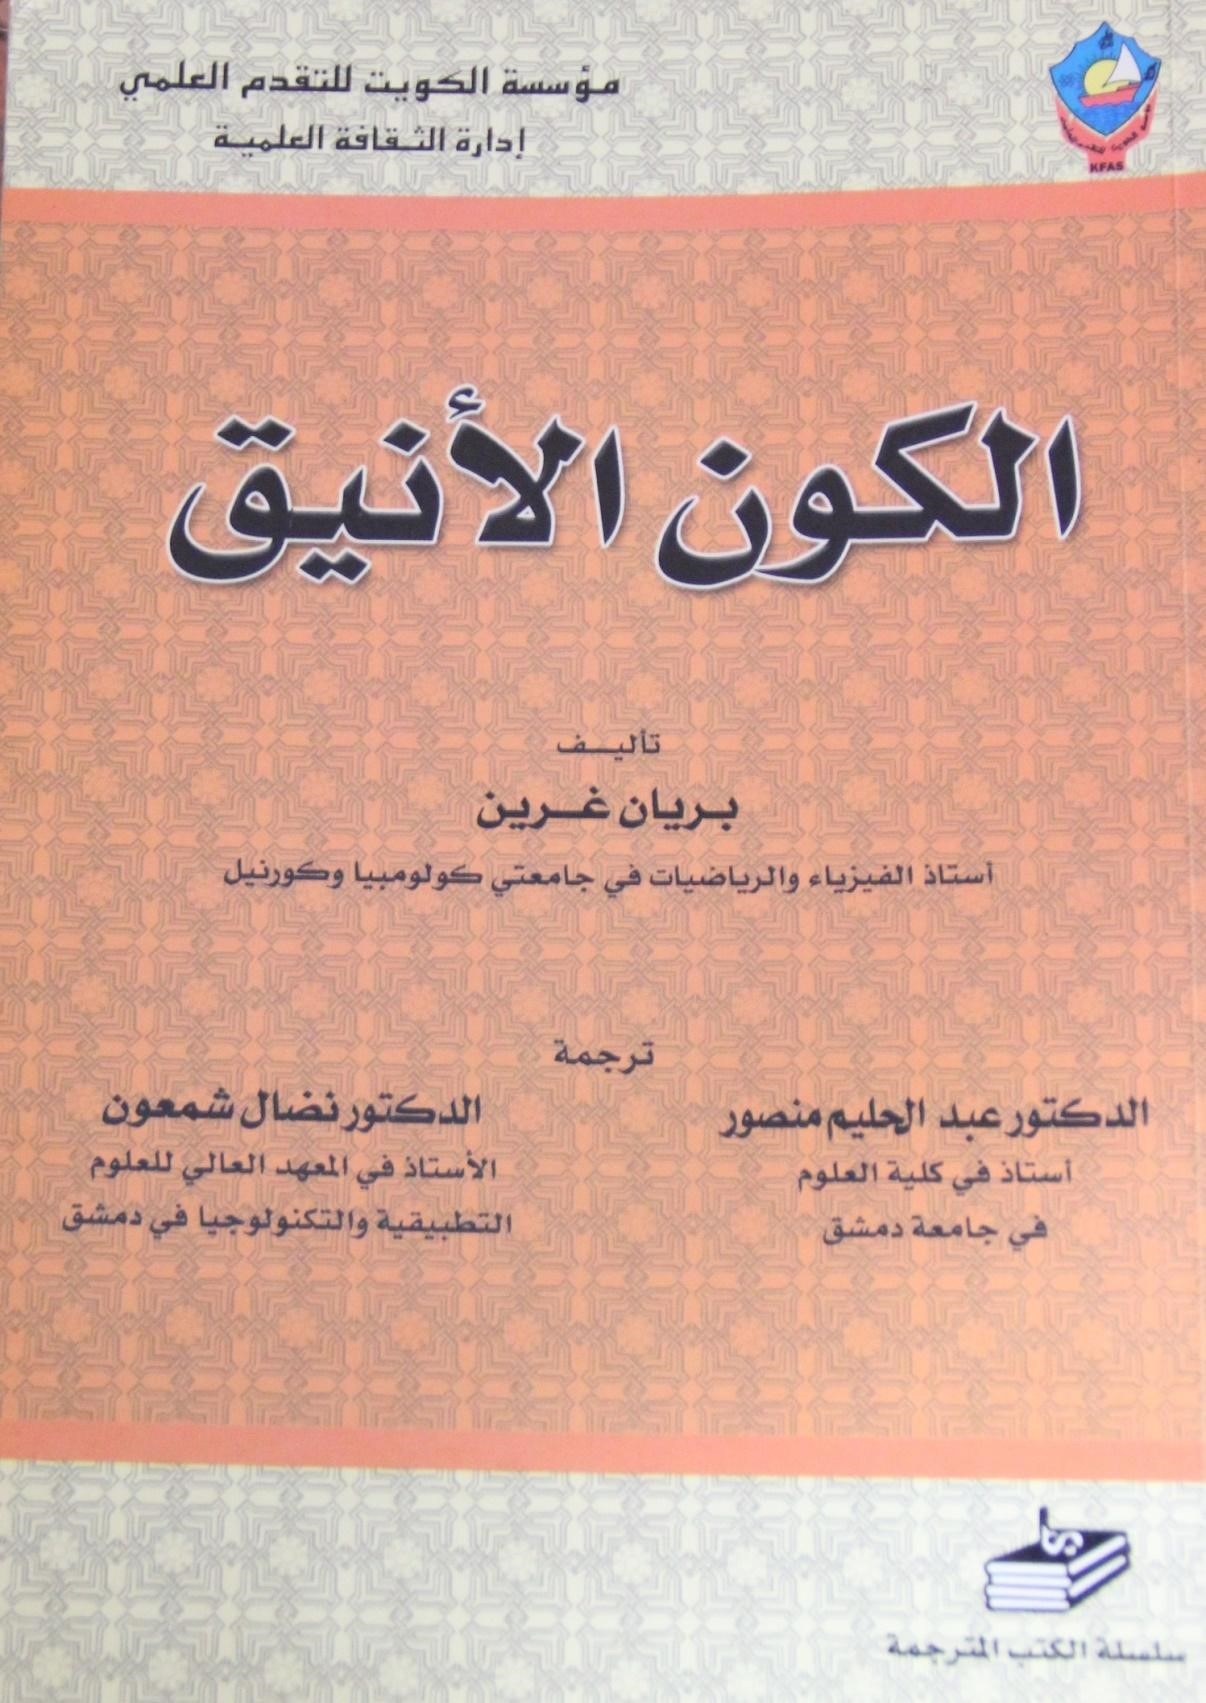 هناك ترجمتان لهذا الكتاب بالعربية، الأولى هي نسخة د. عبد الحليم منصور ود. نضال هنا، والثانية هي نسخة د.عبد الله الشيخ التابعة للمنظمة العربية للترجمة (مواقع التواصل)